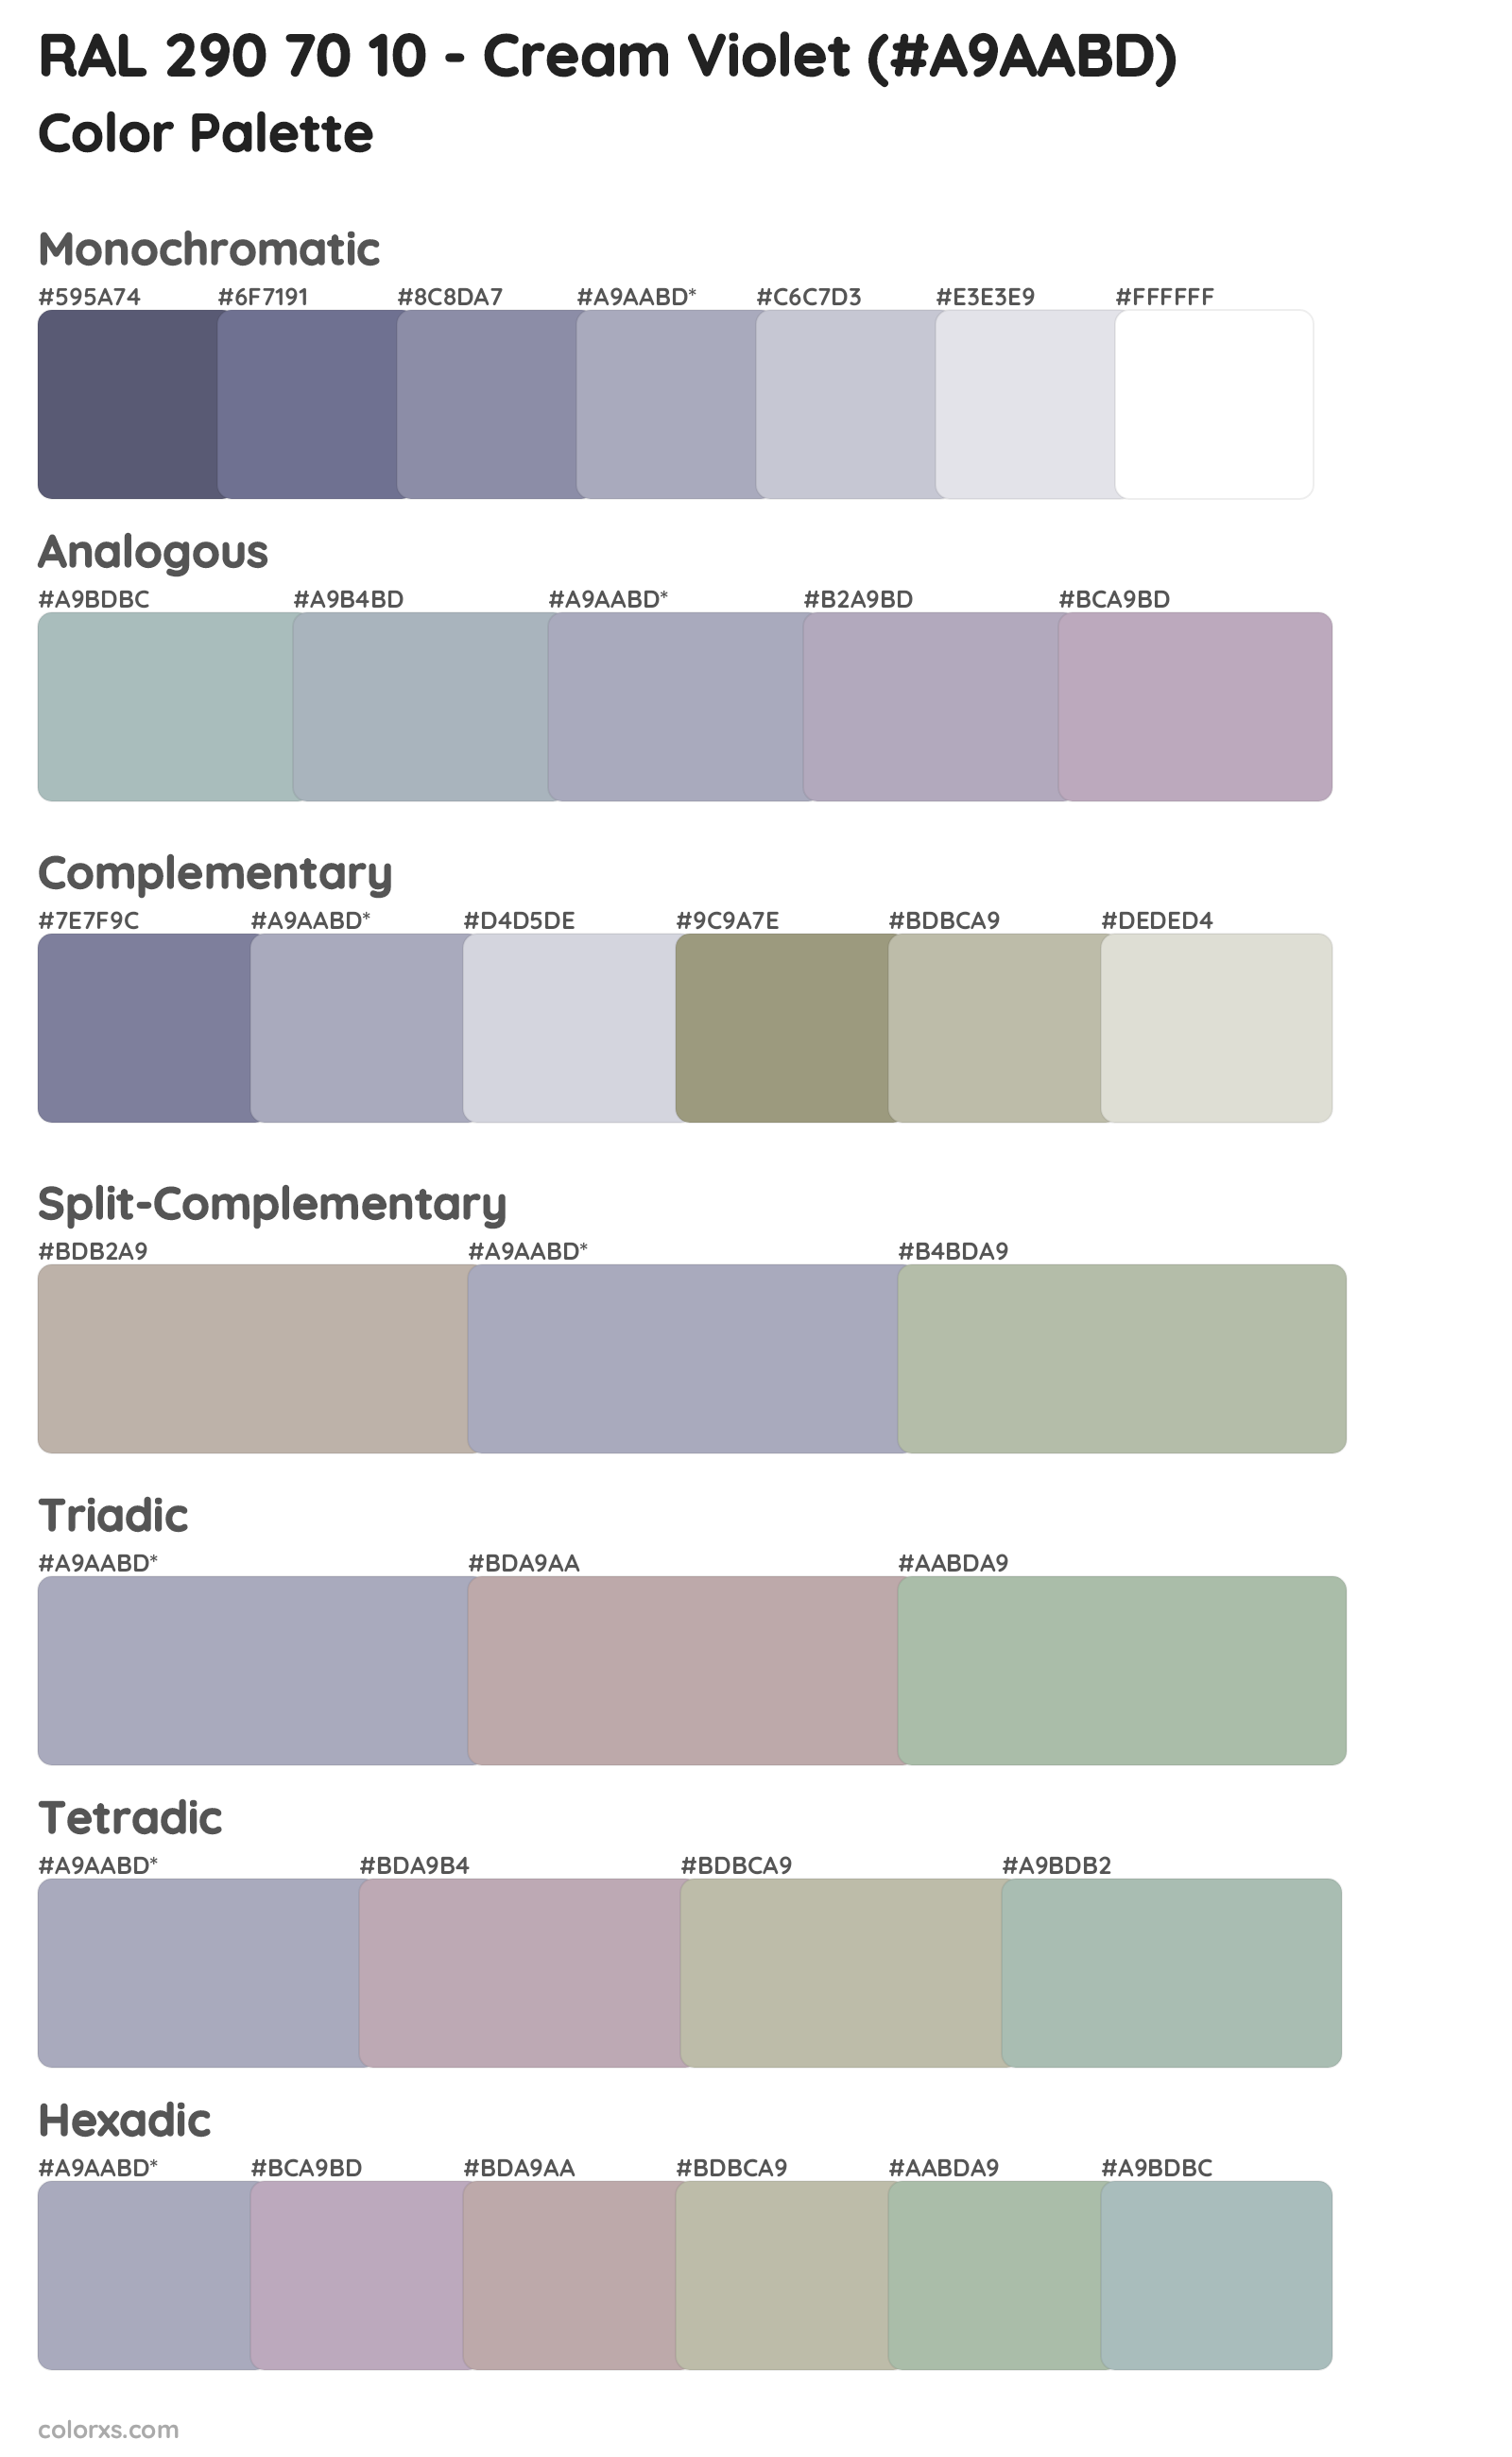 RAL 290 70 10 - Cream Violet Color Scheme Palettes